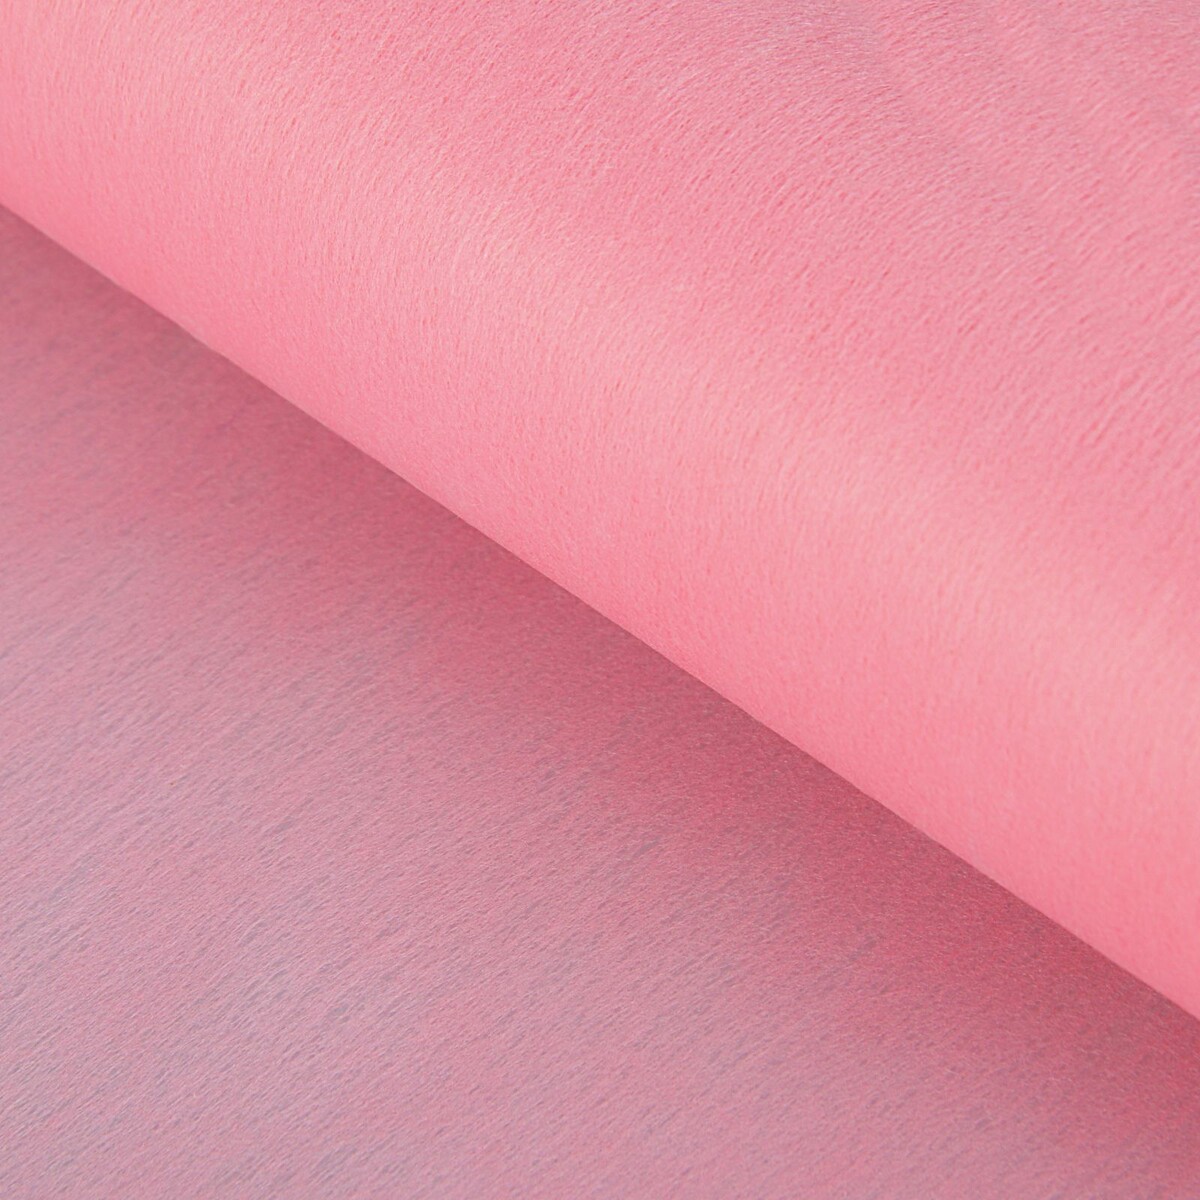 Фетр для упаковок и поделок, однотонный, розовый, двусторонний, рулон 1шт., 0,5 x 20 м фетр для декора и флористики однотонный белый двусторонний рулон 1шт 50 см x 15 м